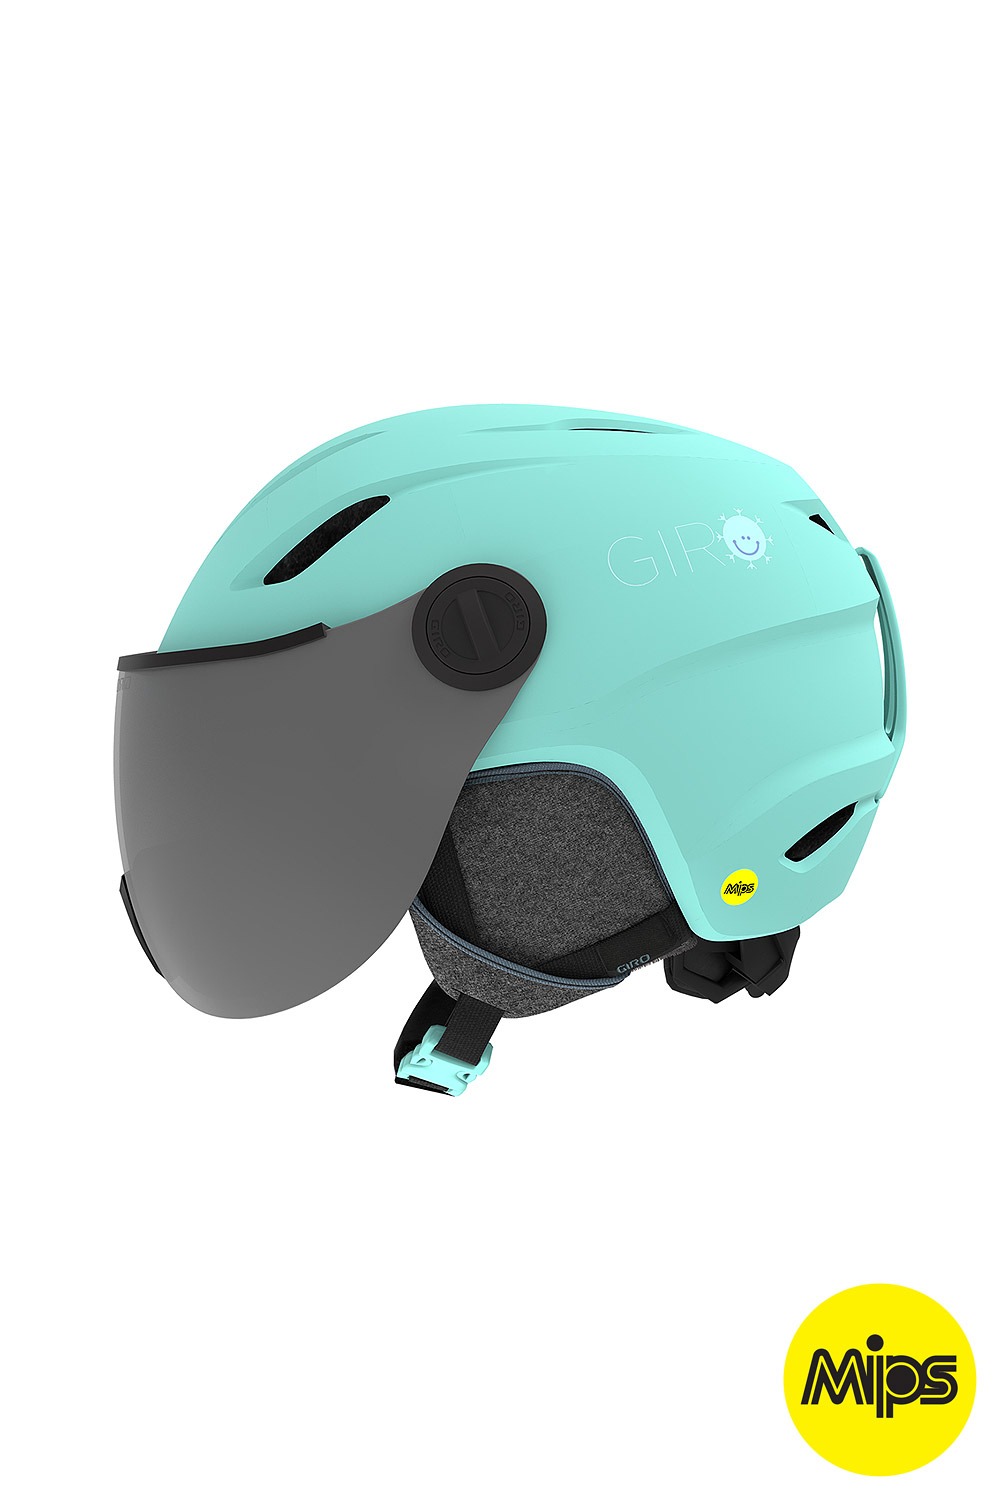 지로 키즈 헬멧 버즈 밉스 2021 GIRO_YOUTH BUZZ MIPS_MATTE COOL BREEZE_MIPS시스템/키즈헬멧_DFGO019NM